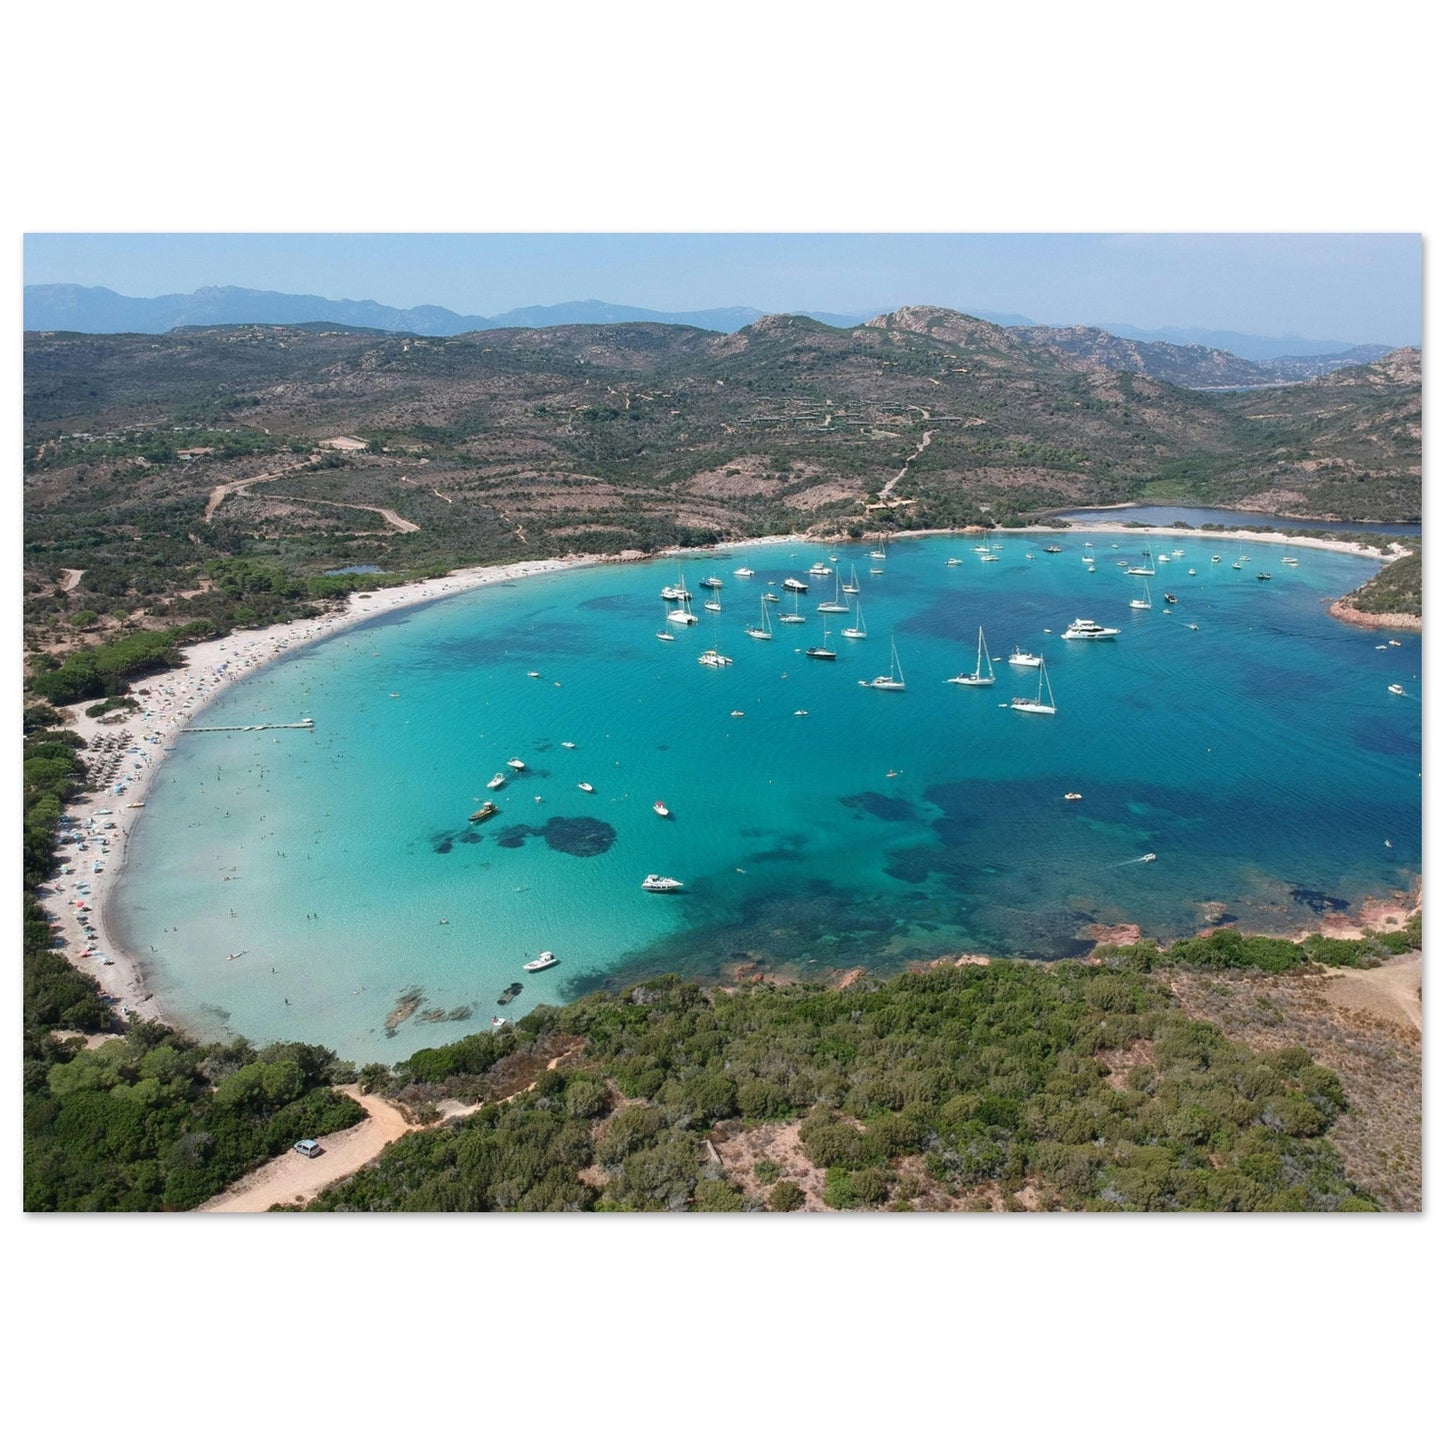 Vente Photo de la plage de la Baie de Santa-Manza, Corse #2 - Tableau photo paysage